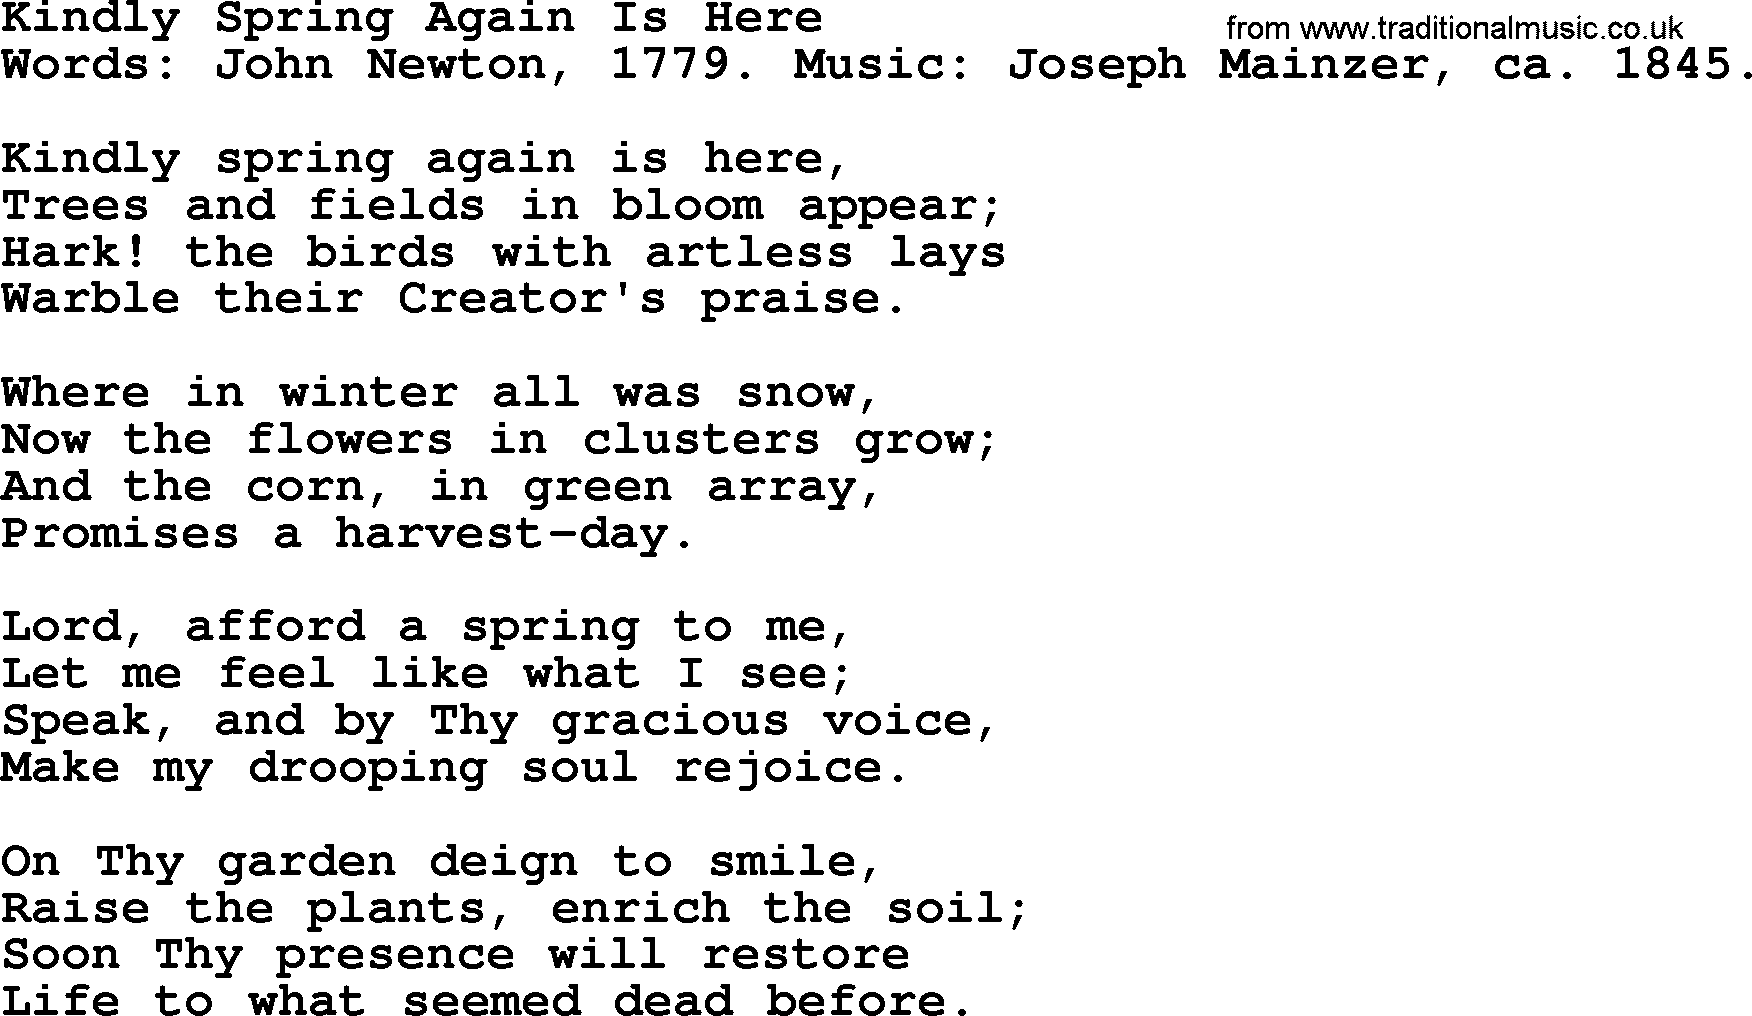 John Newton hymn: Kindly Spring Again Is Here, lyrics